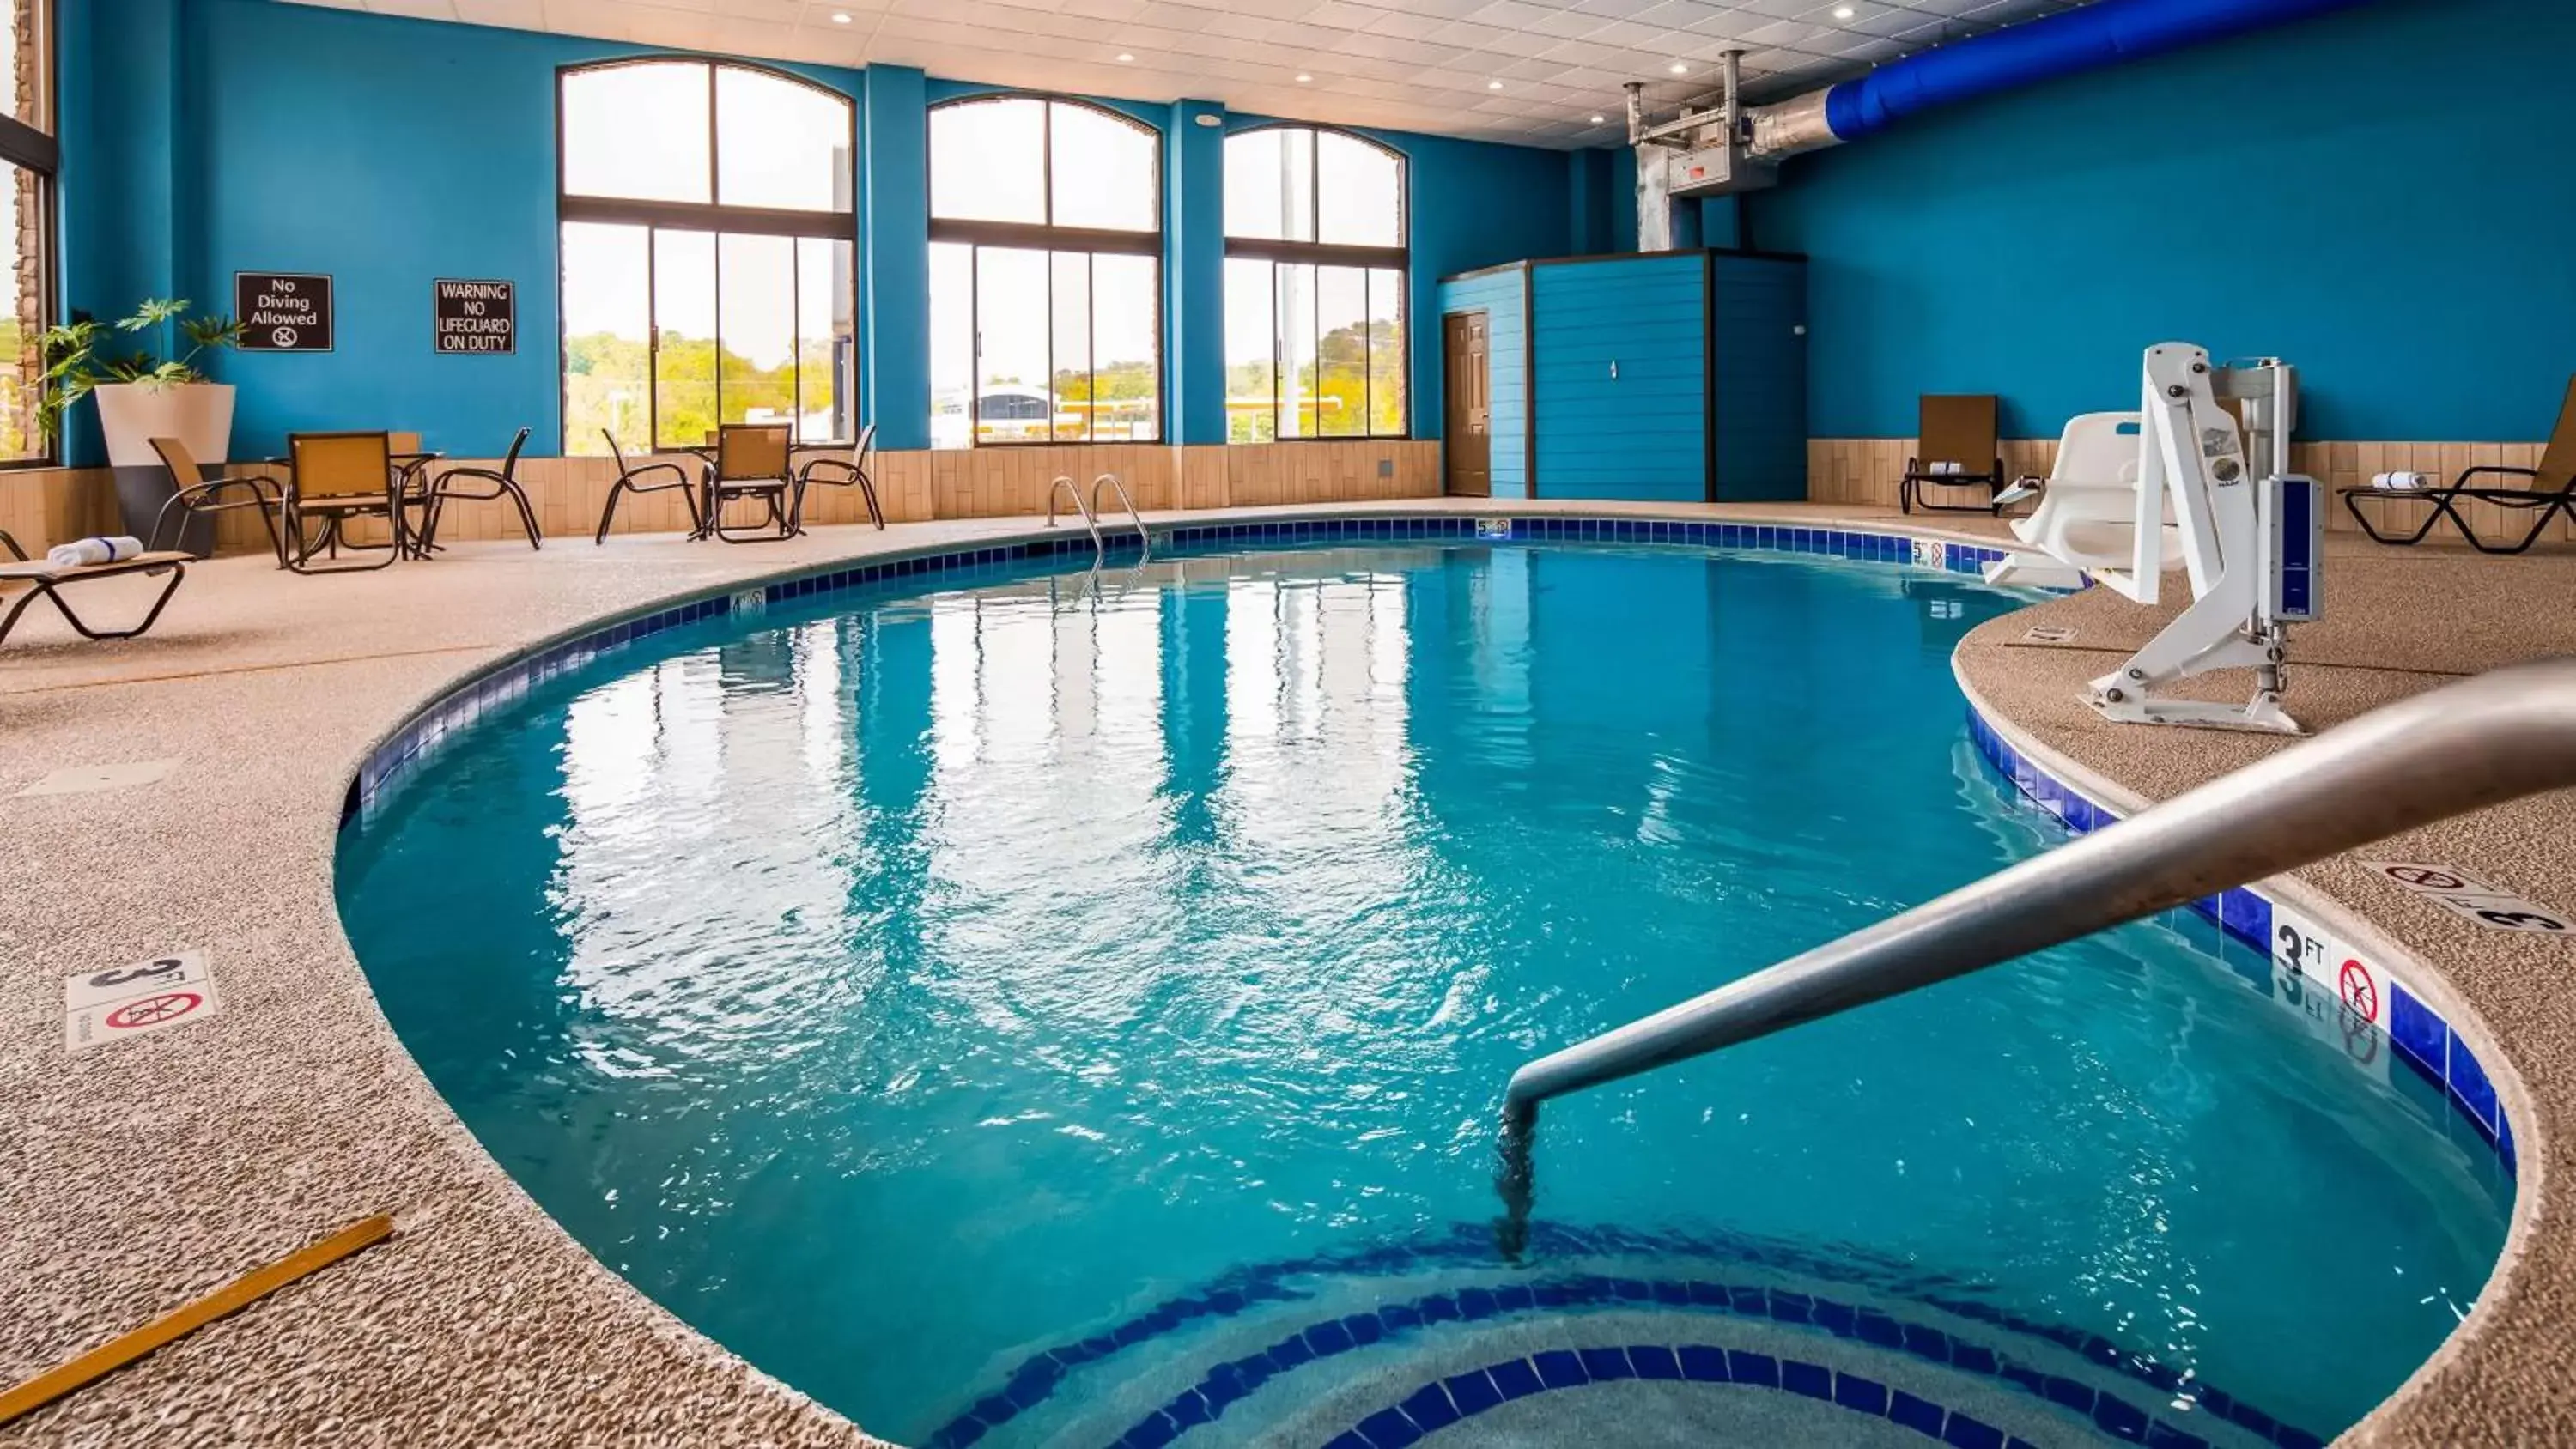 On site, Swimming Pool in Best Western Sevierville/Kodak Inn